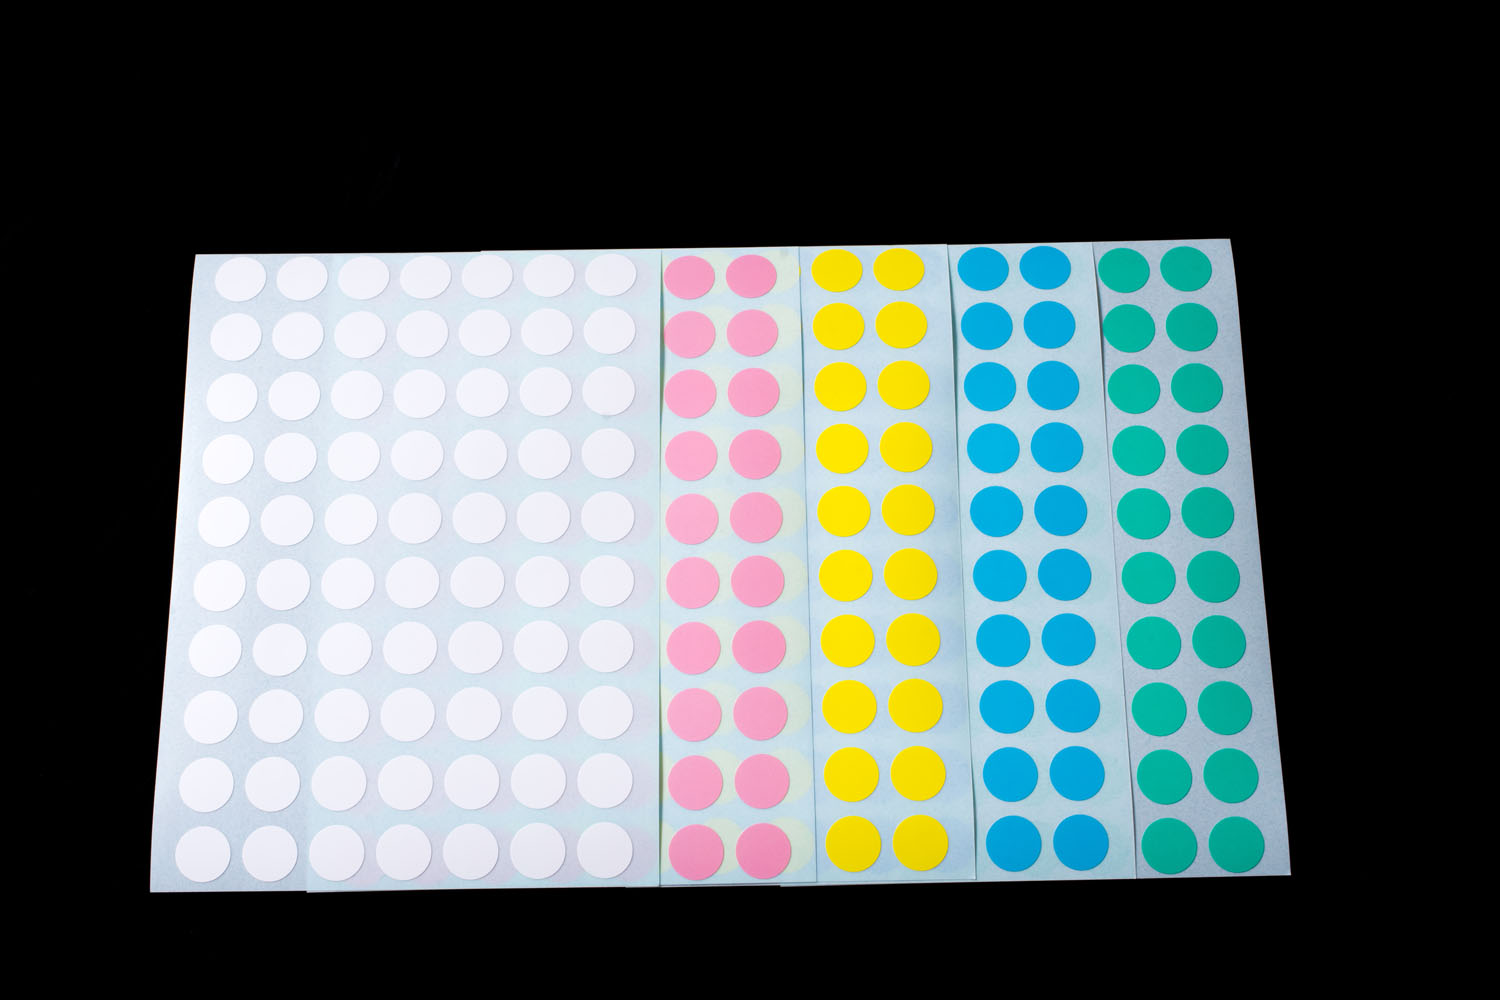 パステルドットラベル 色:5色ミックス(ブルー/グリーン/ピンク/イエロー/ホワイト) ラベルサイズ:φ12mm 700枚/袋